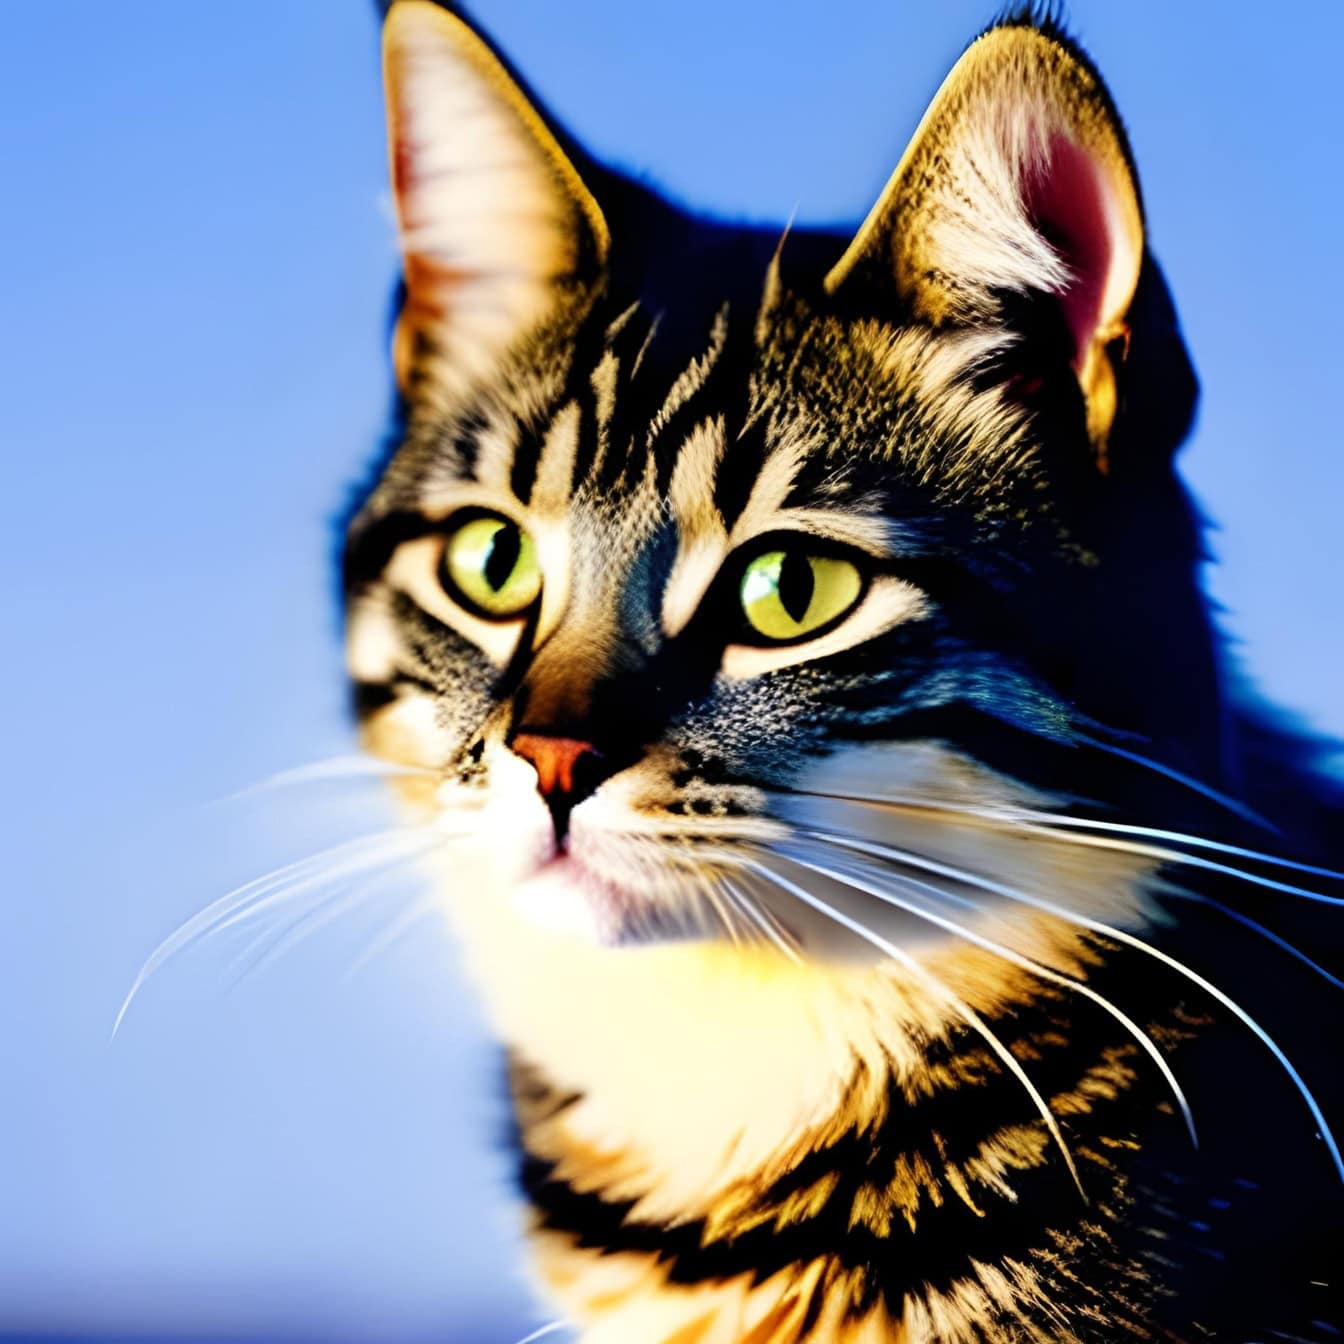 Gráfico de um gatinho adorável com olhos amarelo-esverdeados no fundo azul